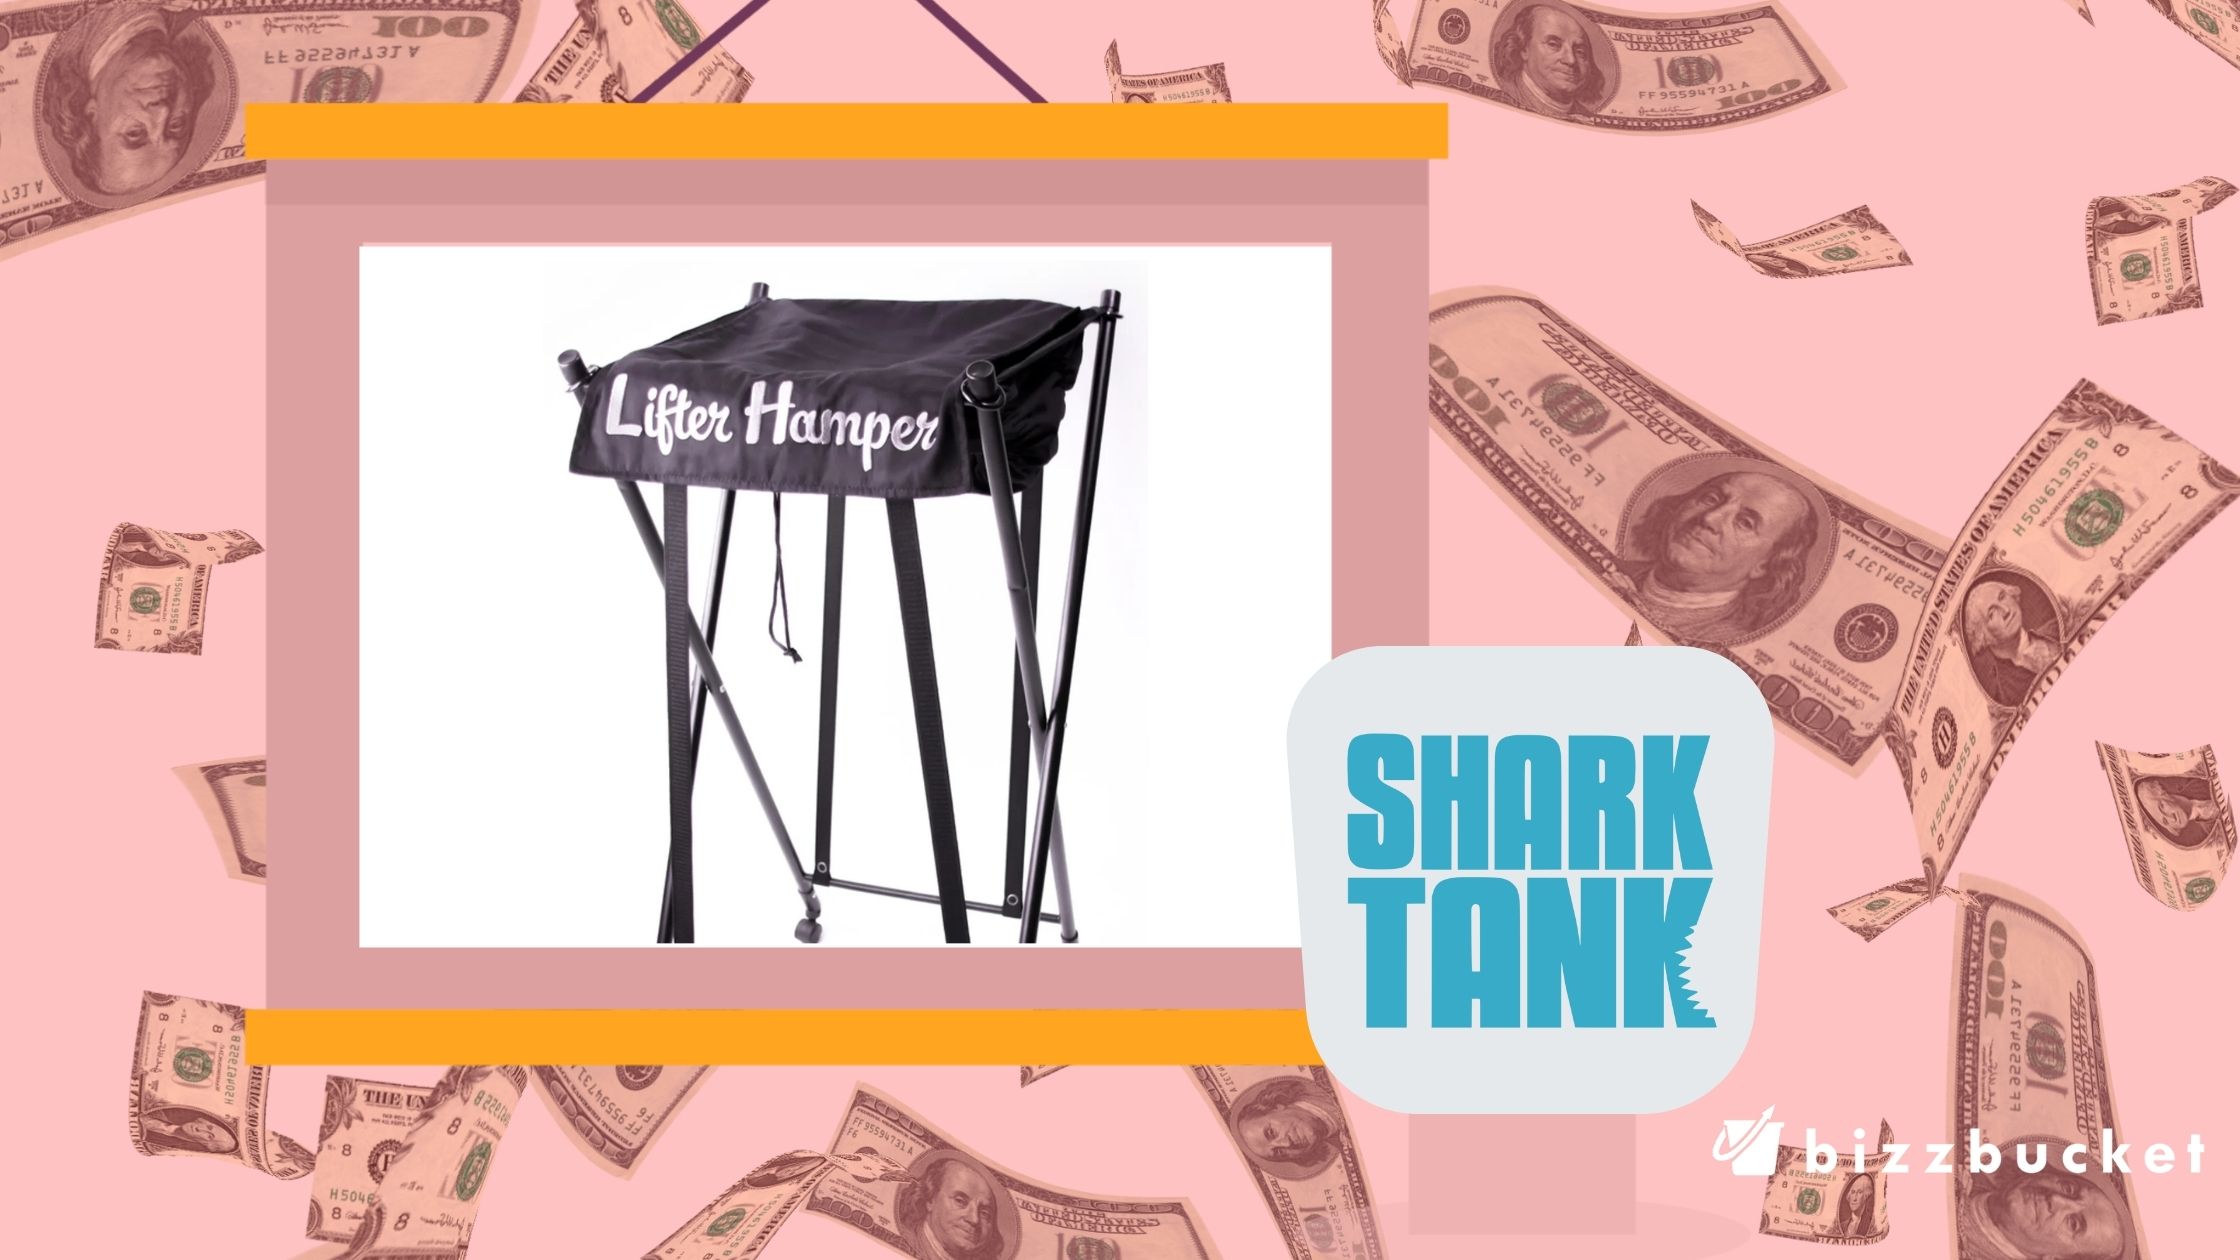 Lifter Hamper shark tank update